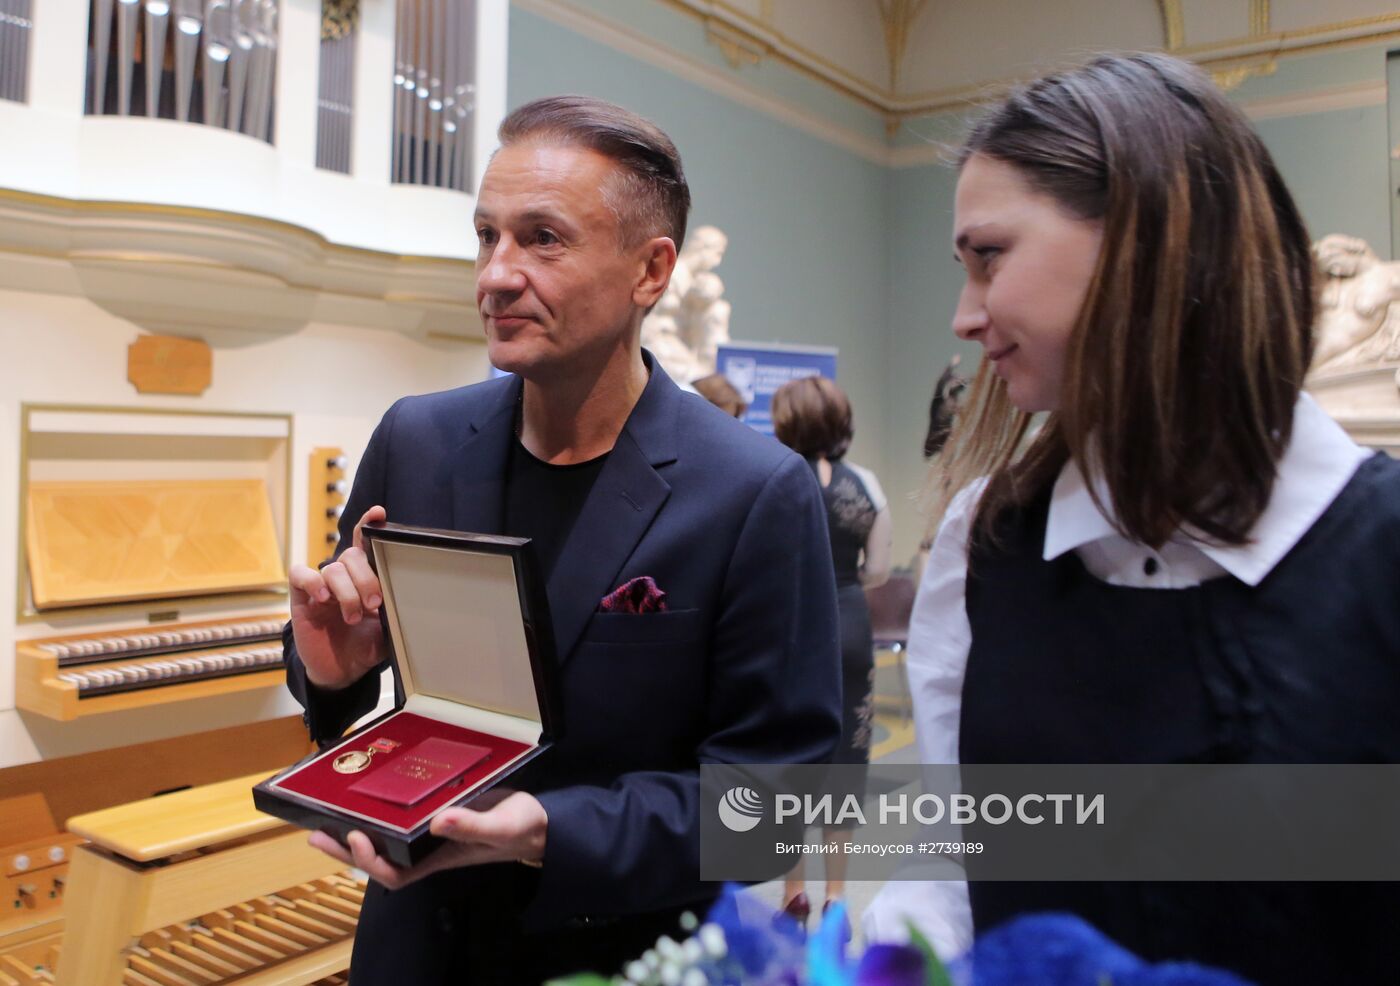 Пятая церемония вручения Золотой медали имени Льва Николаева выдающимся деятелям науки и культуры современности